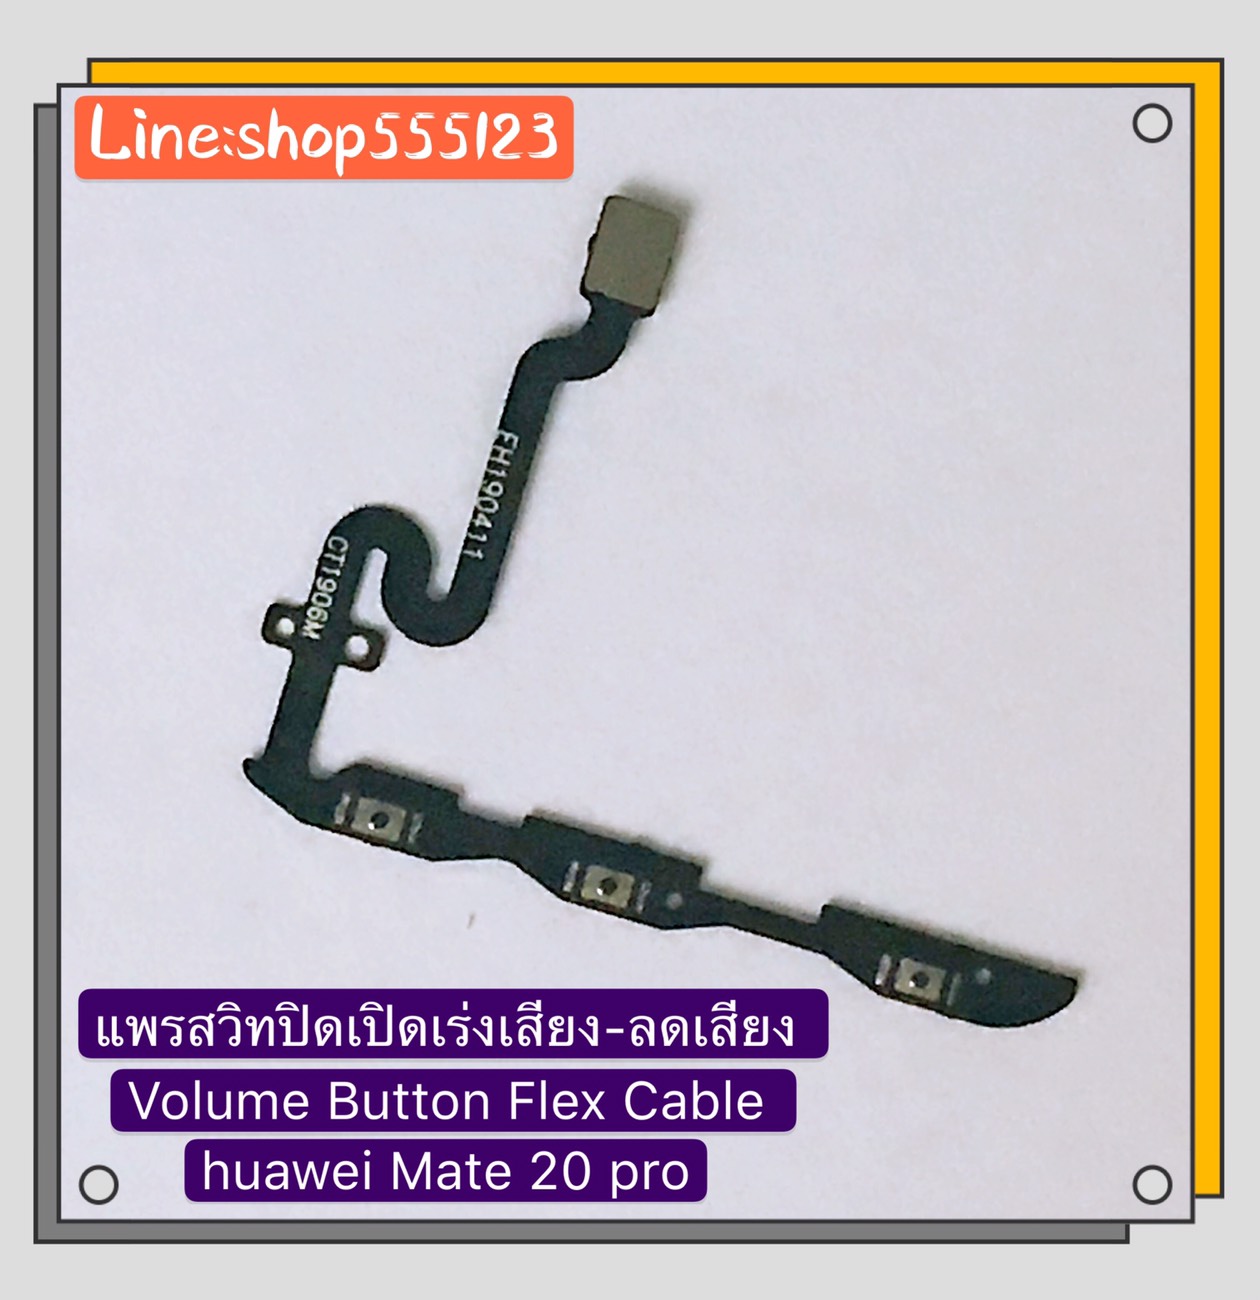 แพรสวิท ปิด-เปิด ( PCB on-off ) Huawei Mate 20 Pro / Mate 20 / Mate 10 Pro สี สีดำ สี สีดำรูปแบบรุ่นที่ีรองรับ แพรสวิท ปิด-เปิด ( PCB on-off ) Huawei Mate 20